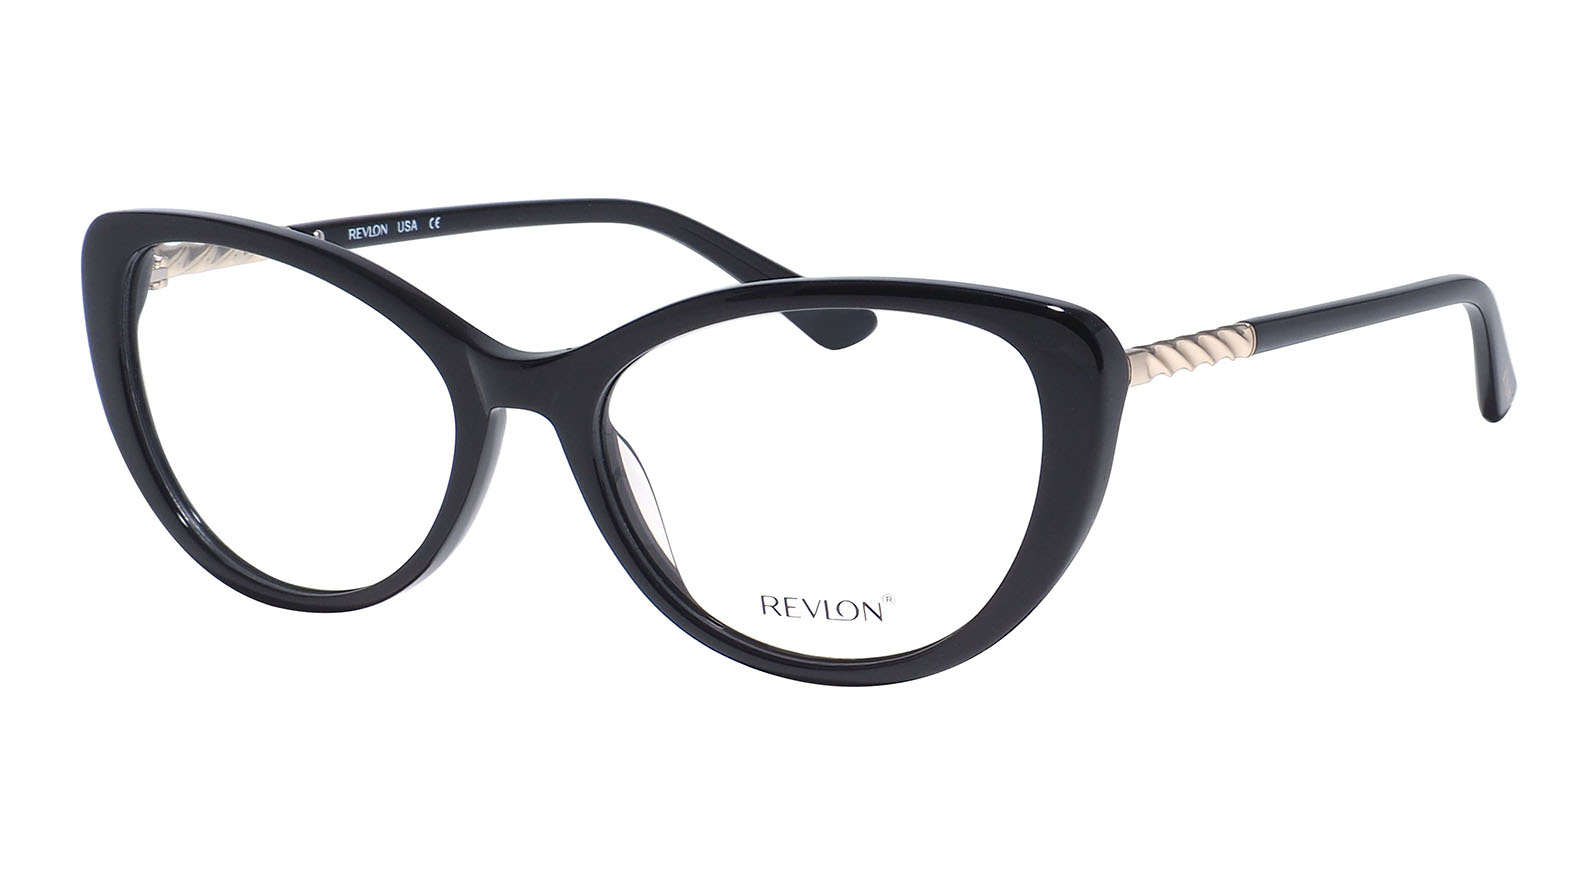 Revlon 1847 07 готовые очки moct для зрения с диоптриями 2 0 женские корригирующие для чтения